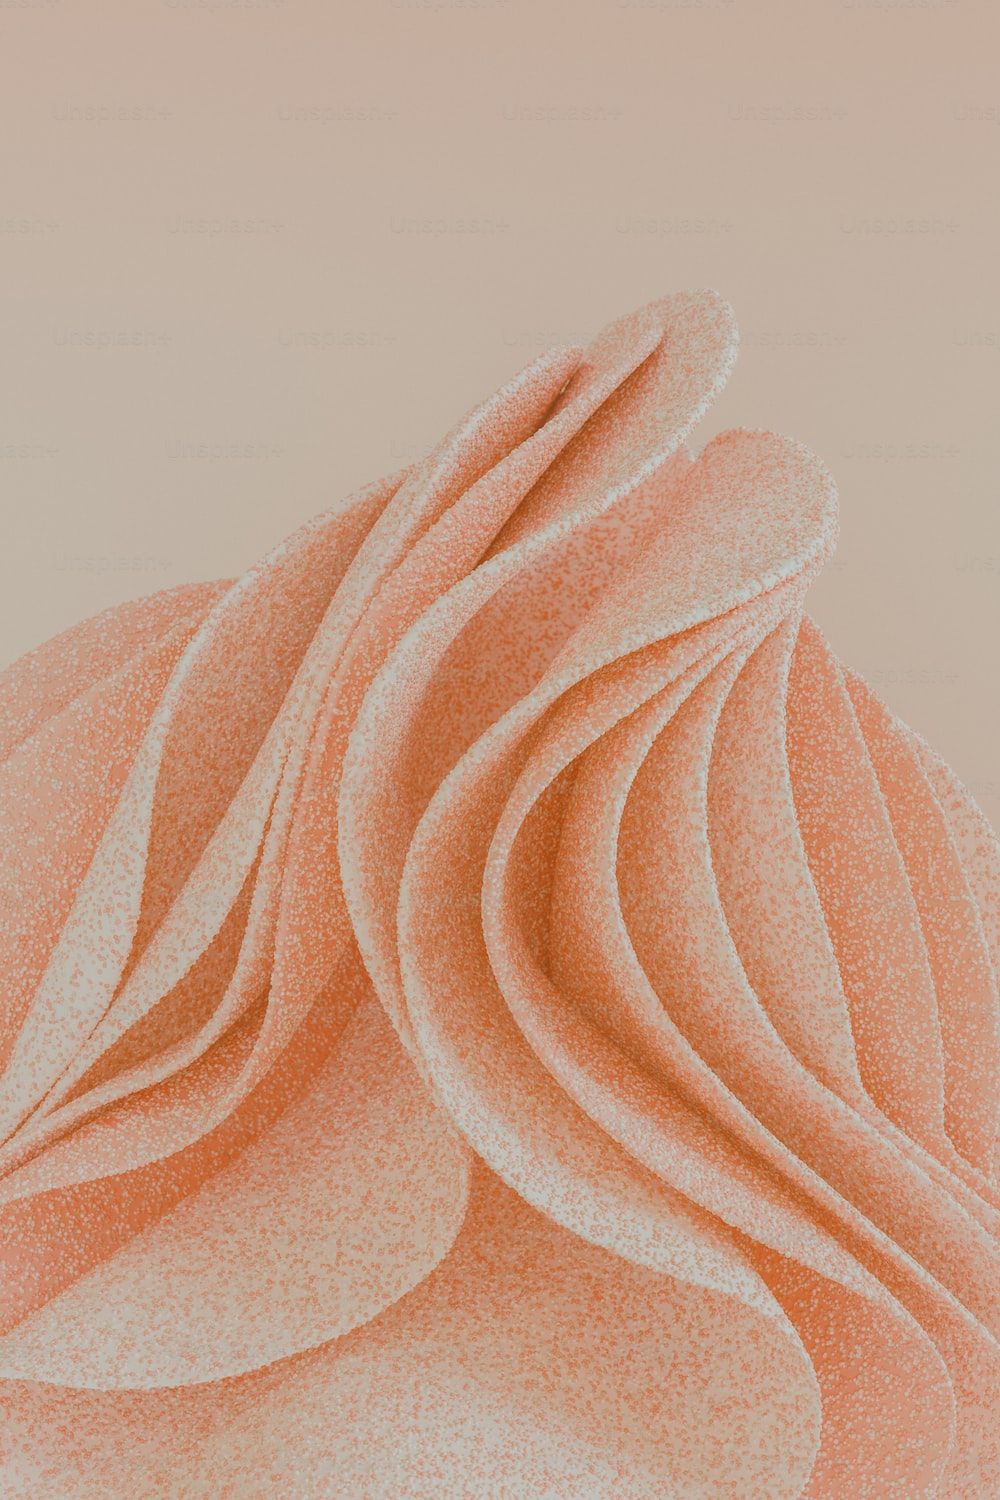 A close up of an orange dessert - Soft pink